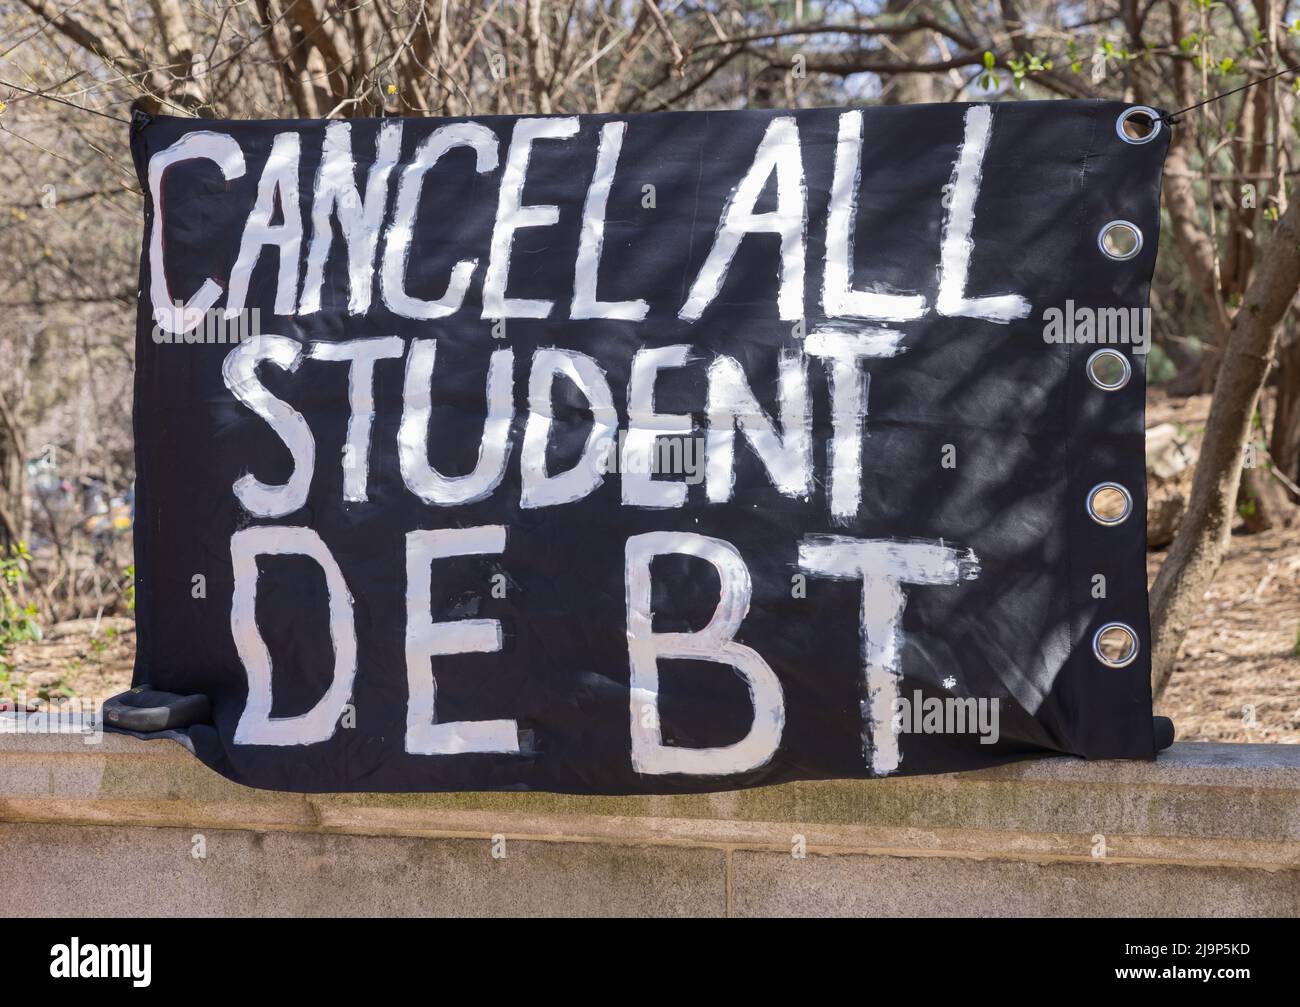 BROOKLYN, New York – 3. April 2021: Während einer Kundgebung zur Aufhebung der Schulden von Studentendarlehen wird in der Nähe des Grand Army Plaza ein Protestbanner gesehen. Stockfoto